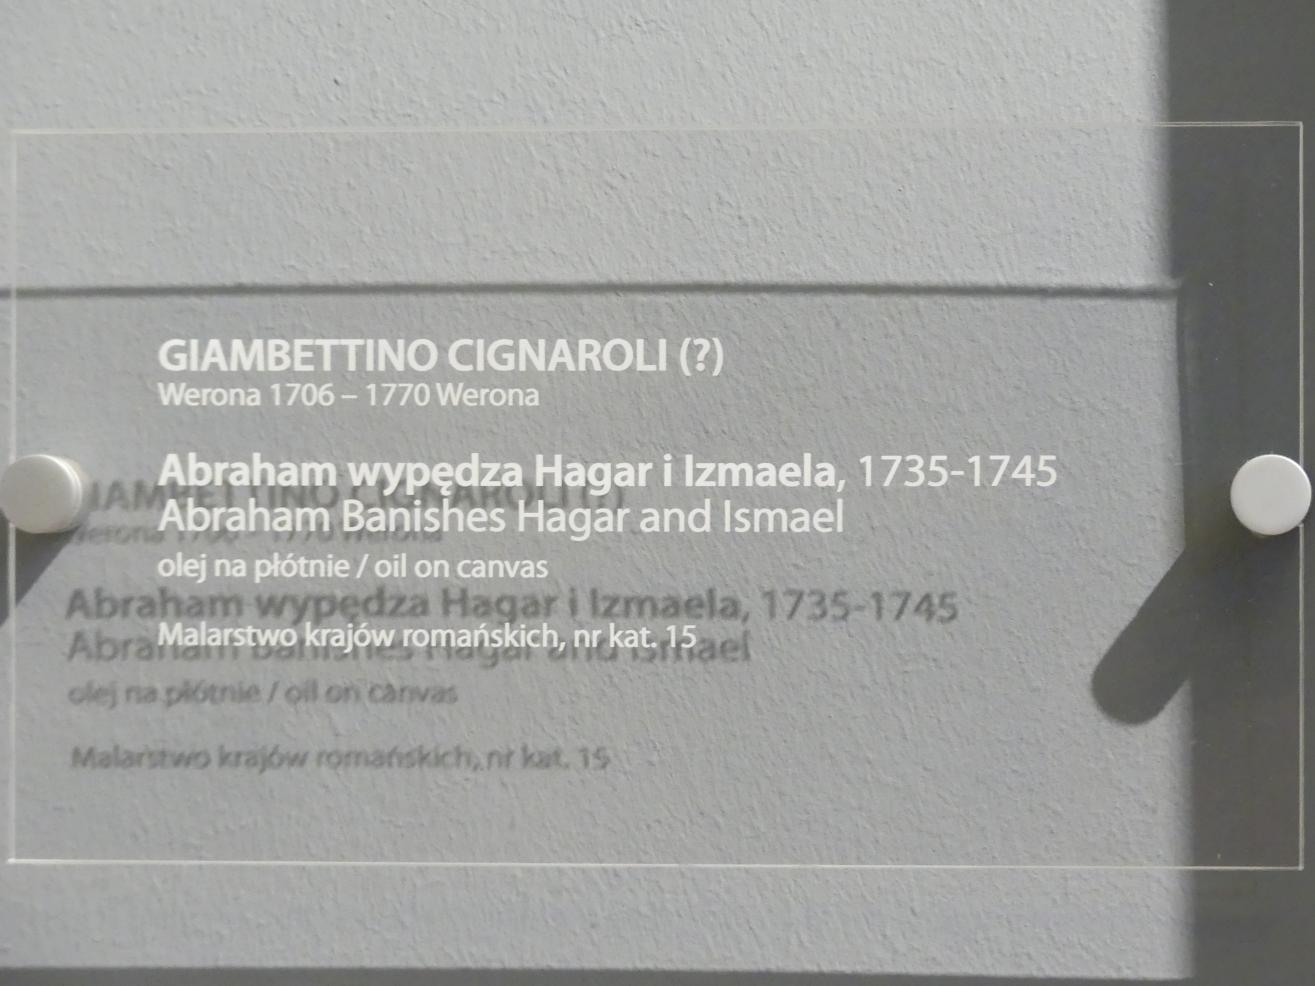 Gianbettino Cignaroli (1740), Abraham verstößt Hagar und Ismael, Breslau, Nationalmuseum, 2. OG, europäische Kunst 15.-20. Jhd., Saal 5, 1735–1745, Bild 2/2